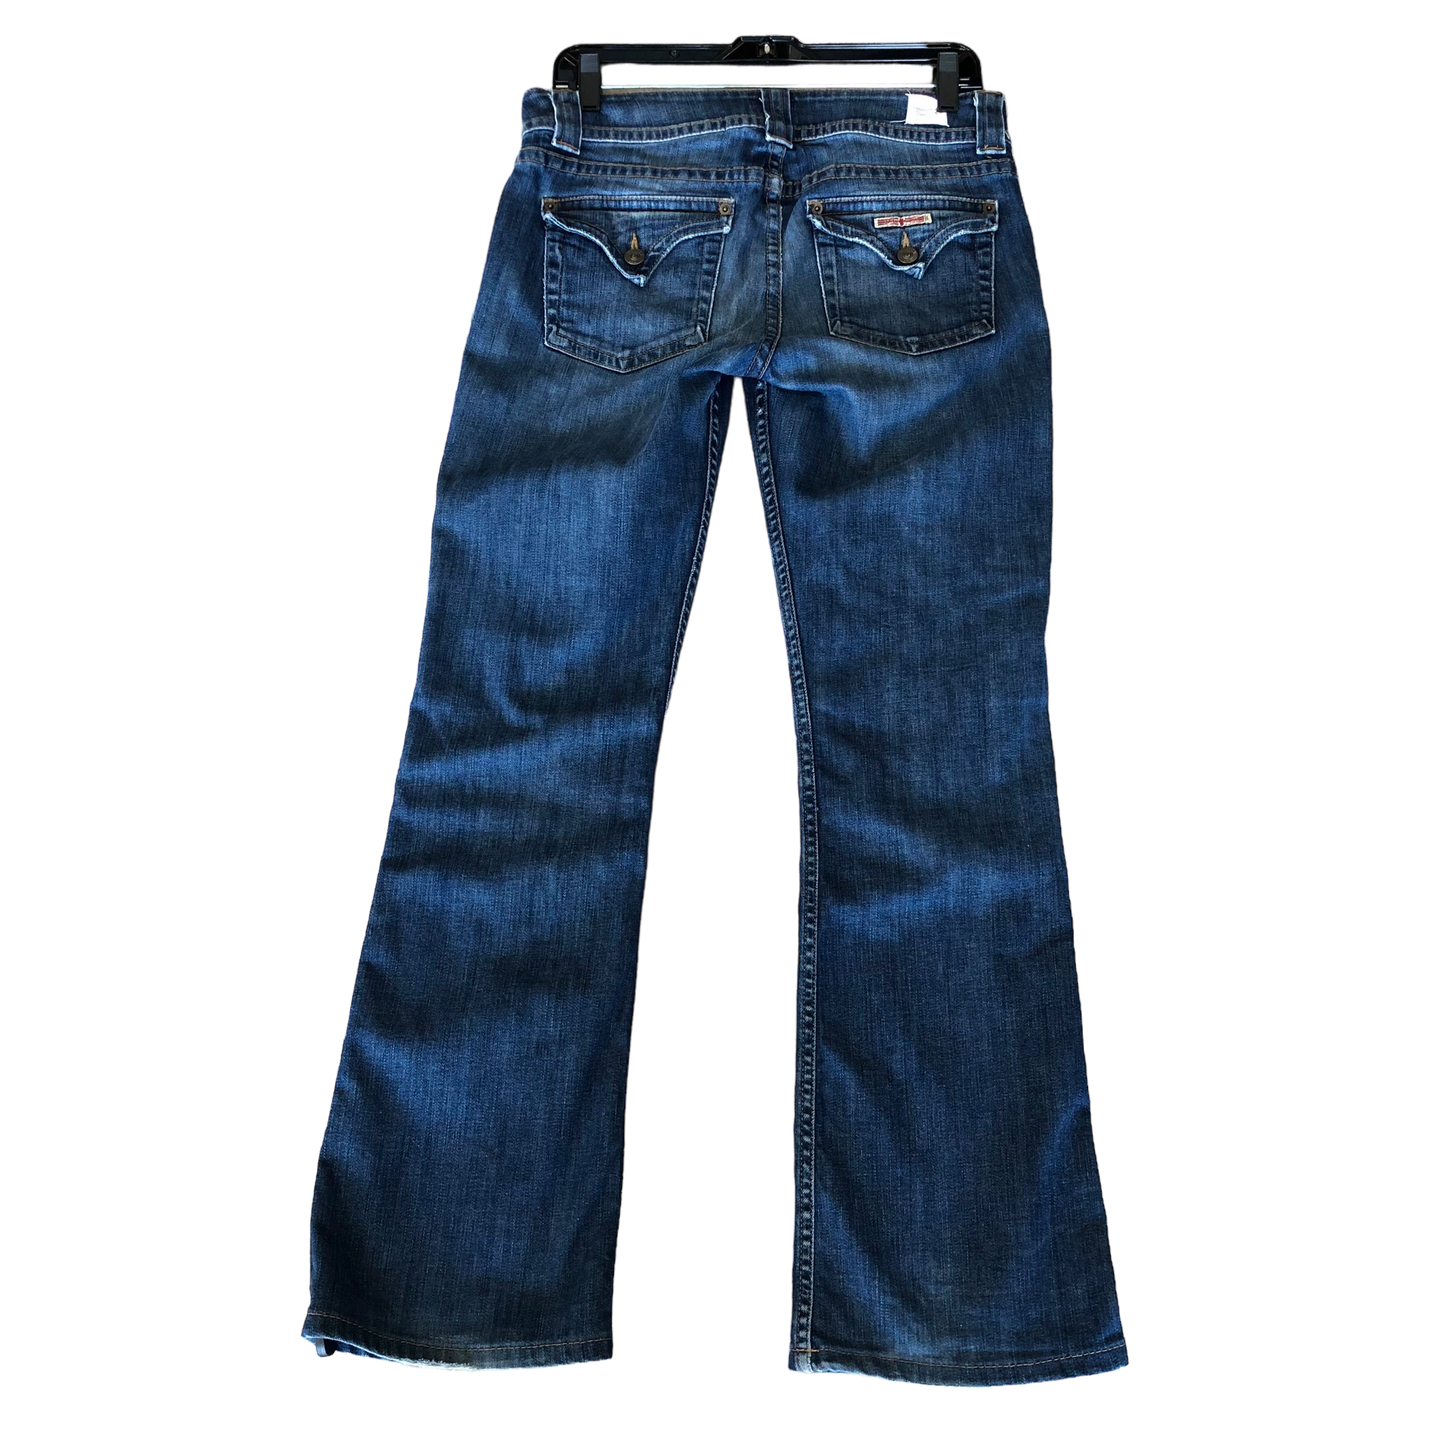 Jeans Designer By Hudson  Size: 6